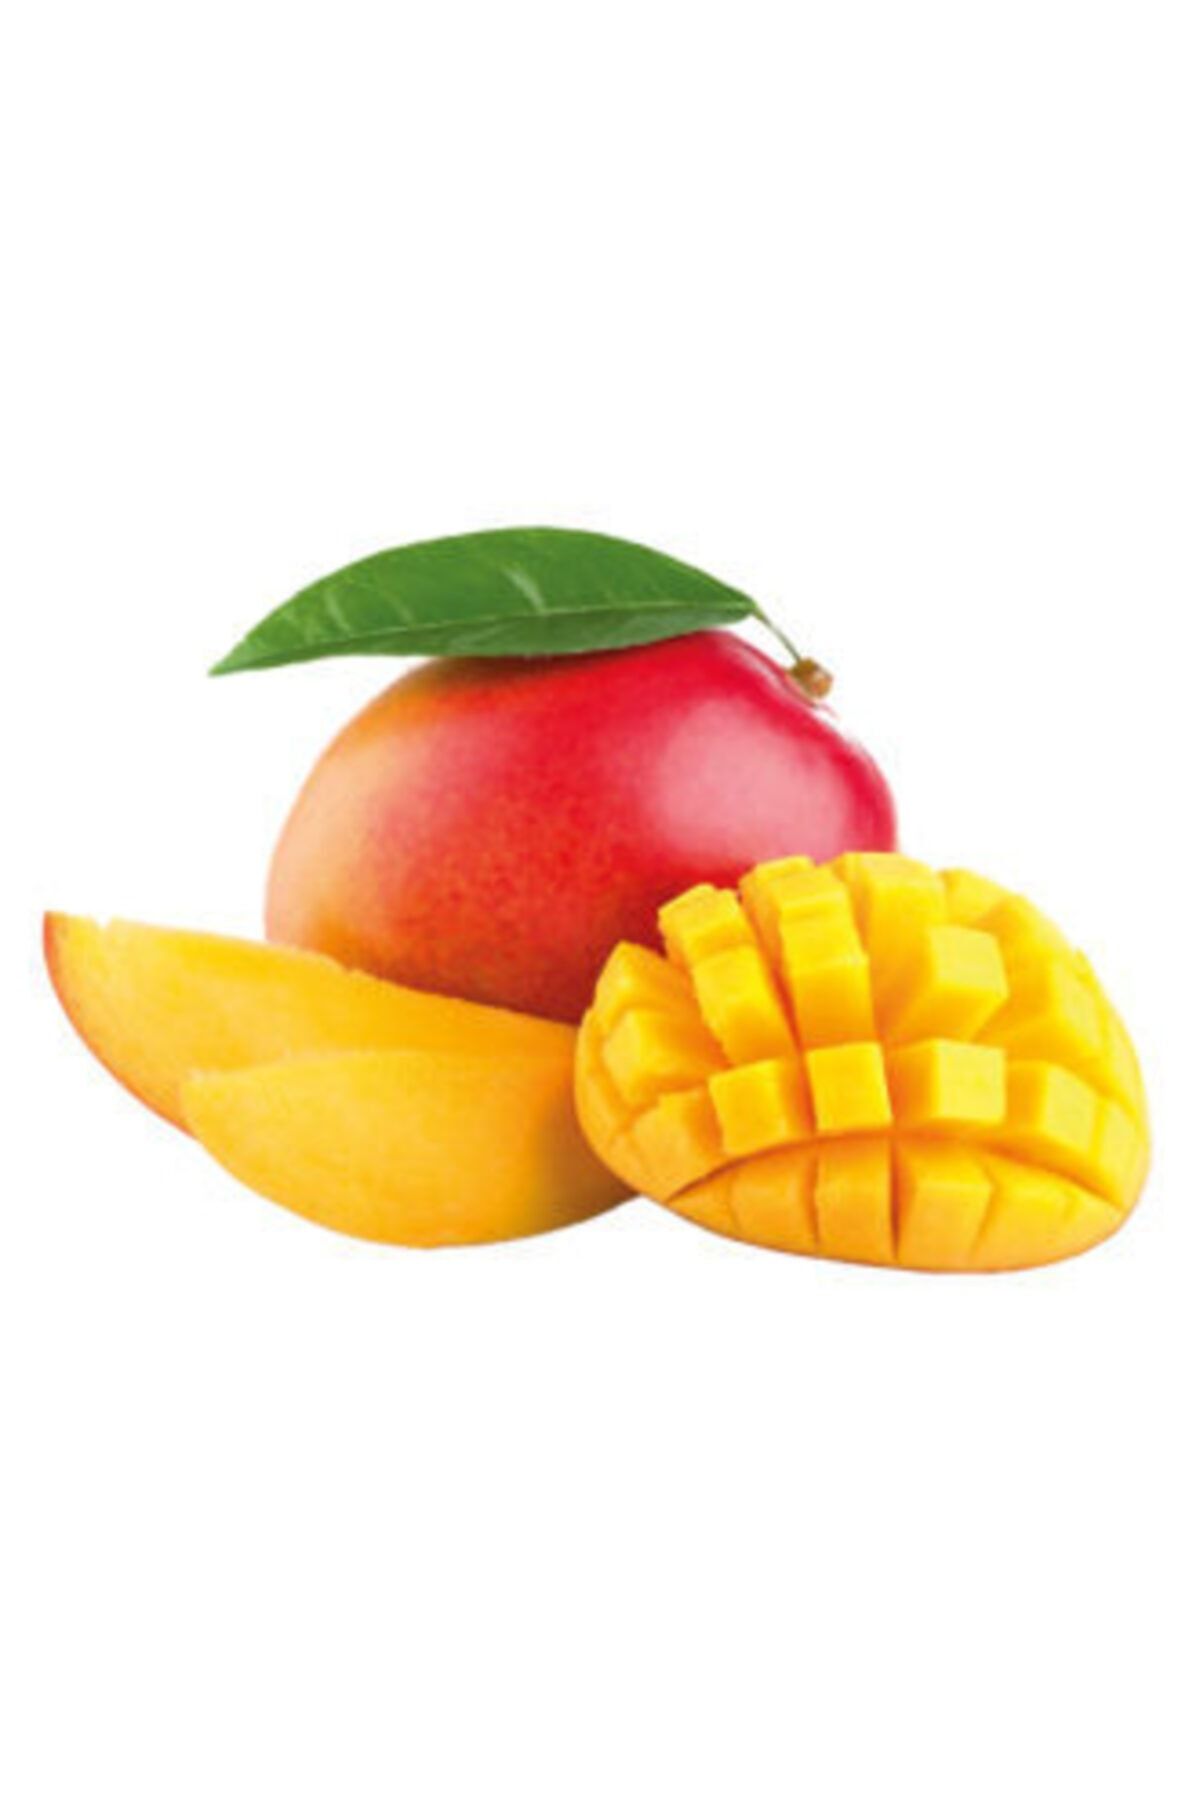 tropikya Mango Meyvesi Yerli Ürün Yemeye Hazır